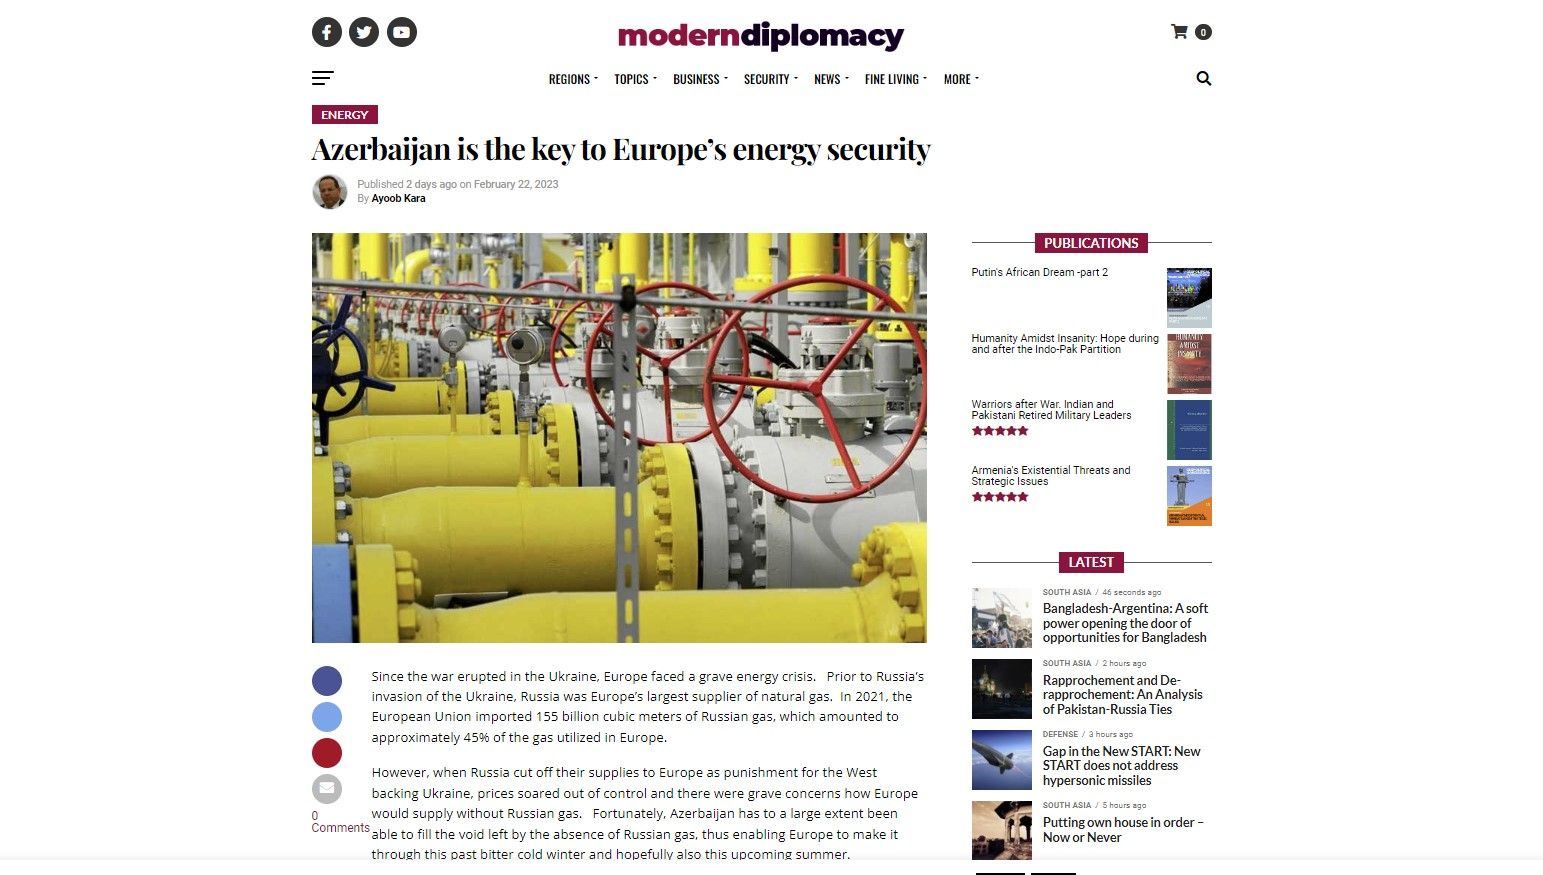 Azərbaycan Avropanın enerji təhlükəsizliyinin açarıdır - İsrailli sabiq nazir